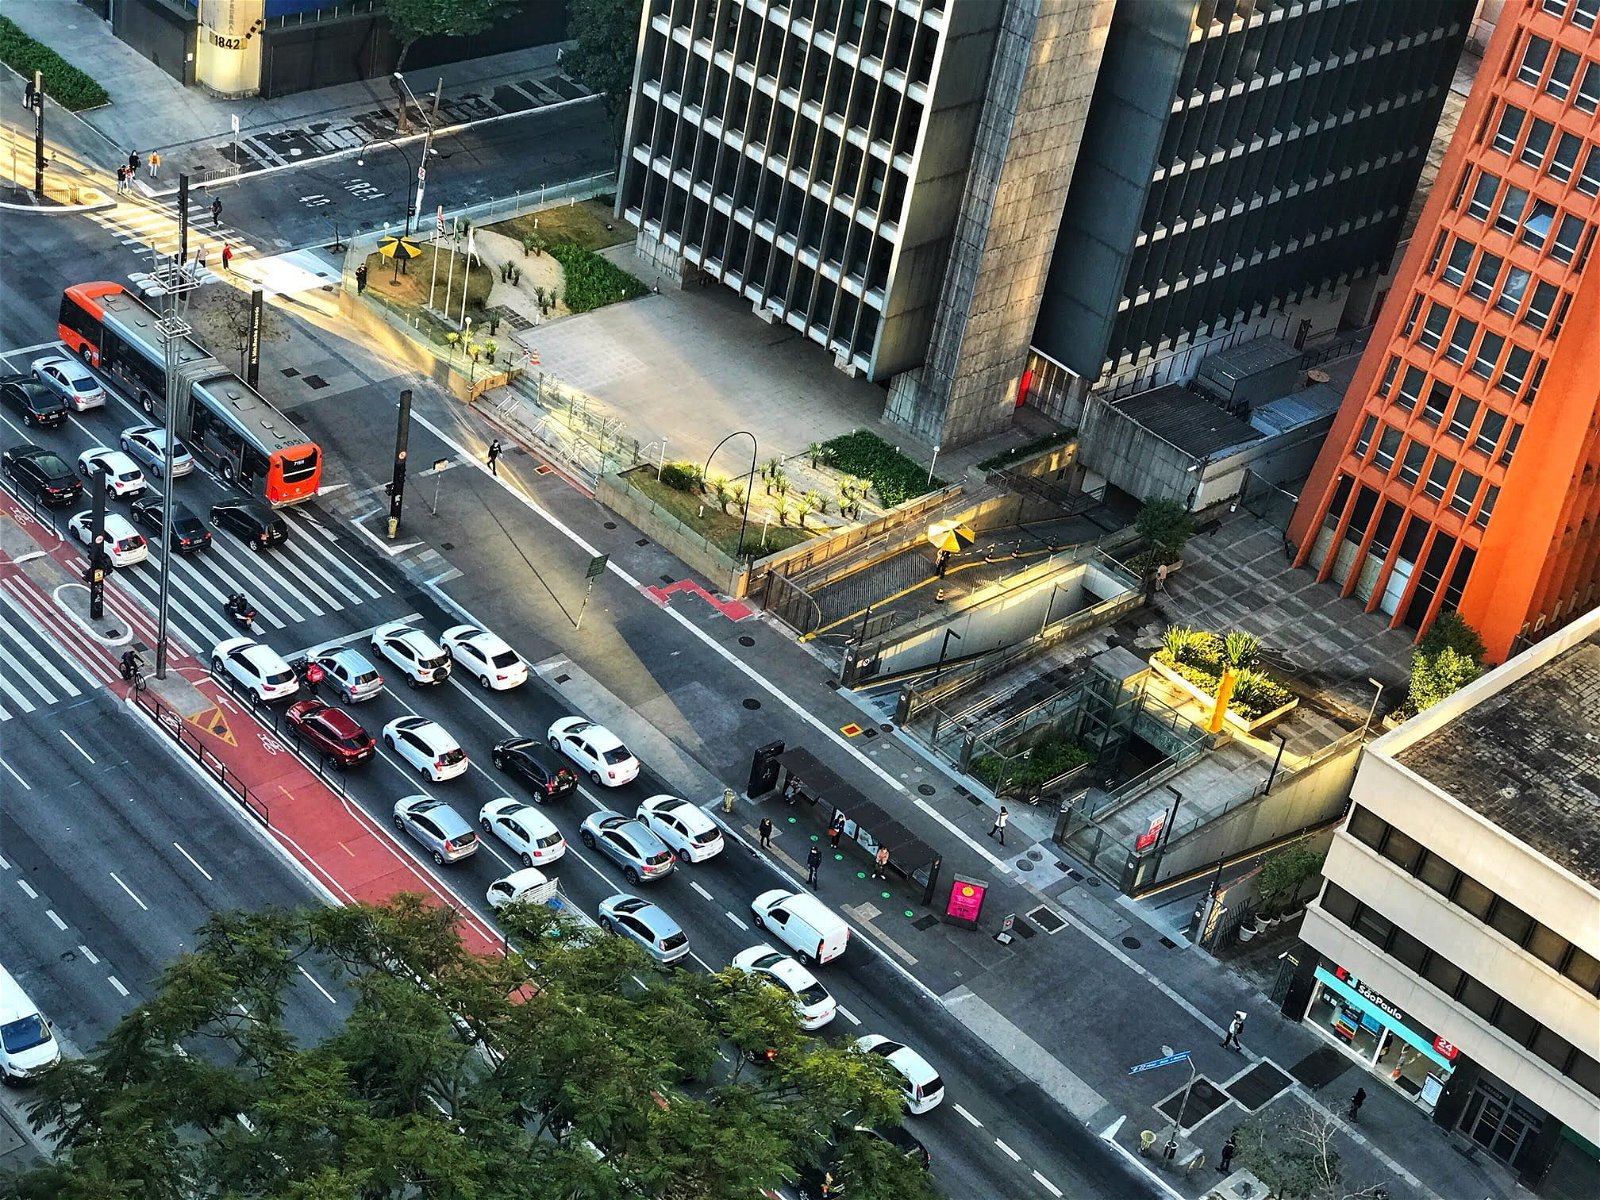 Imagem do alto mostra Avenida Paulista, com carros parados no semáforo.